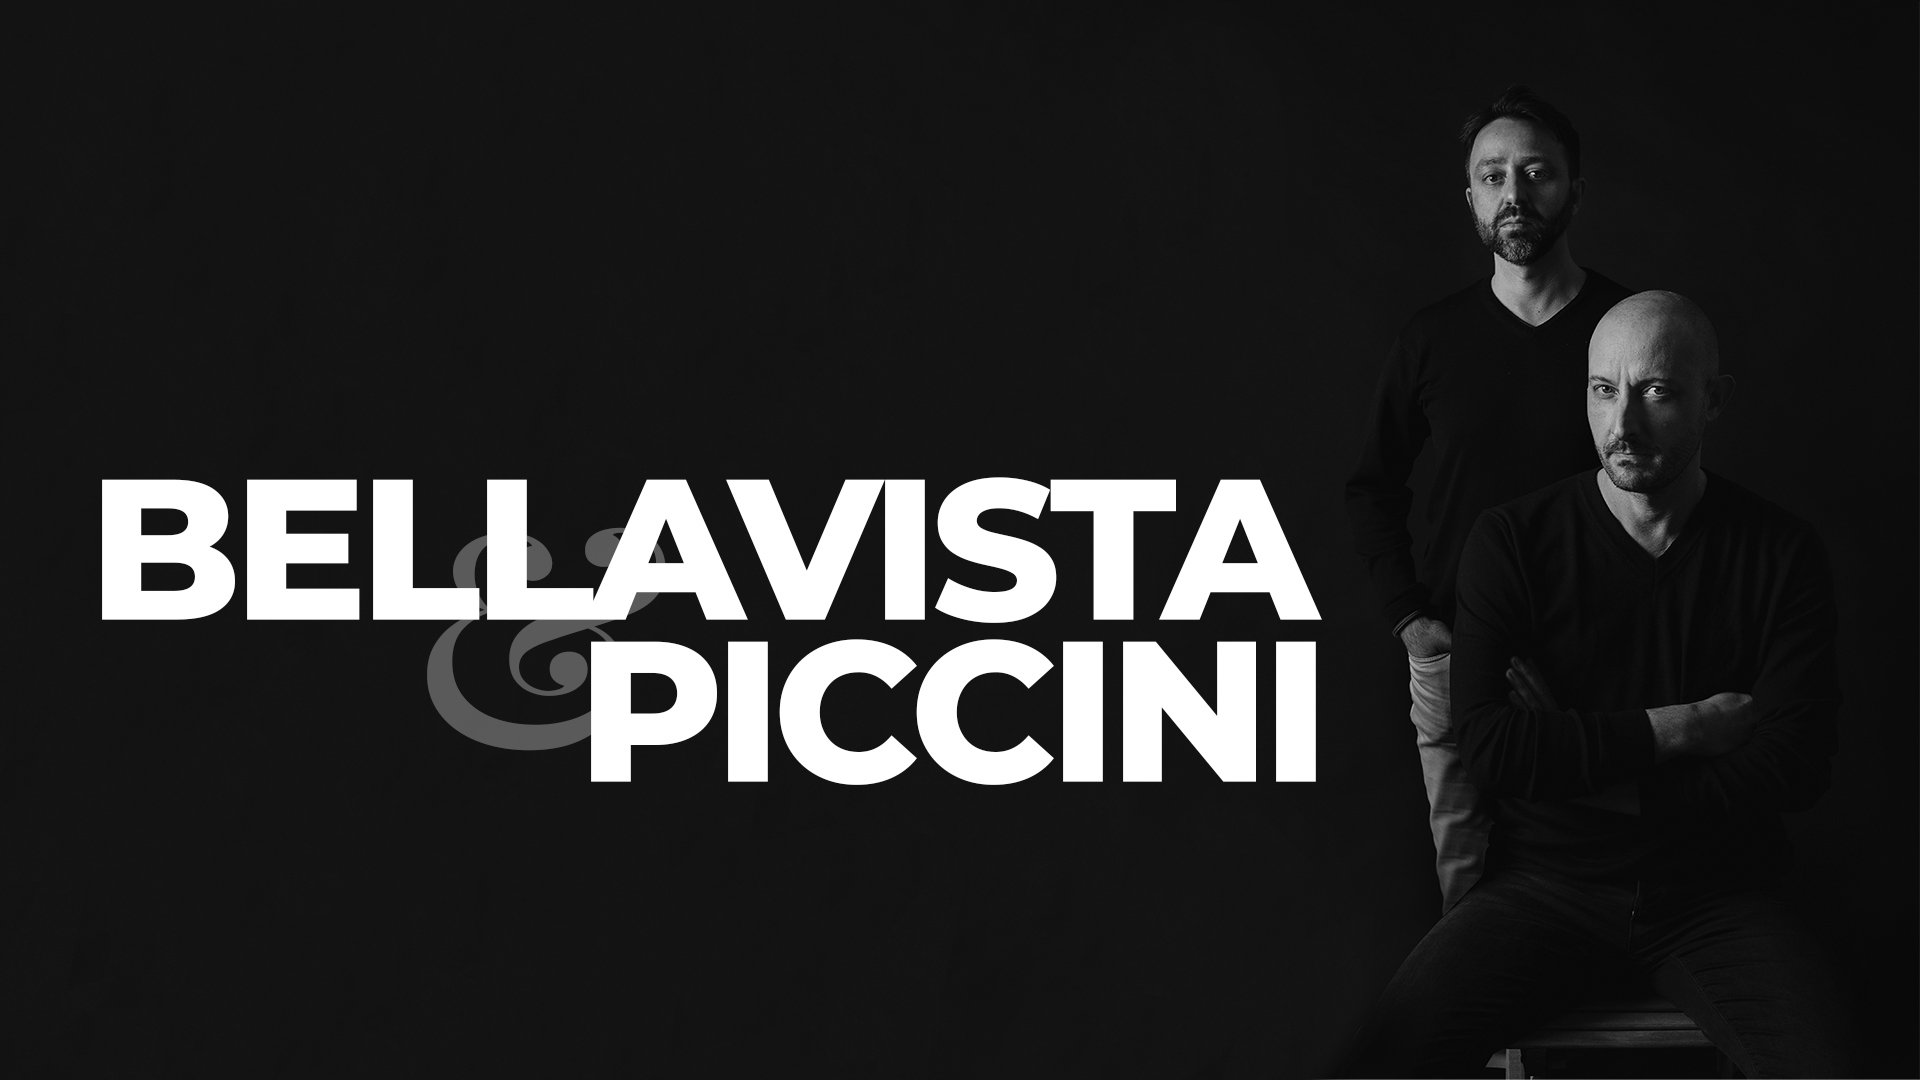 Bellavista & Piccini designs